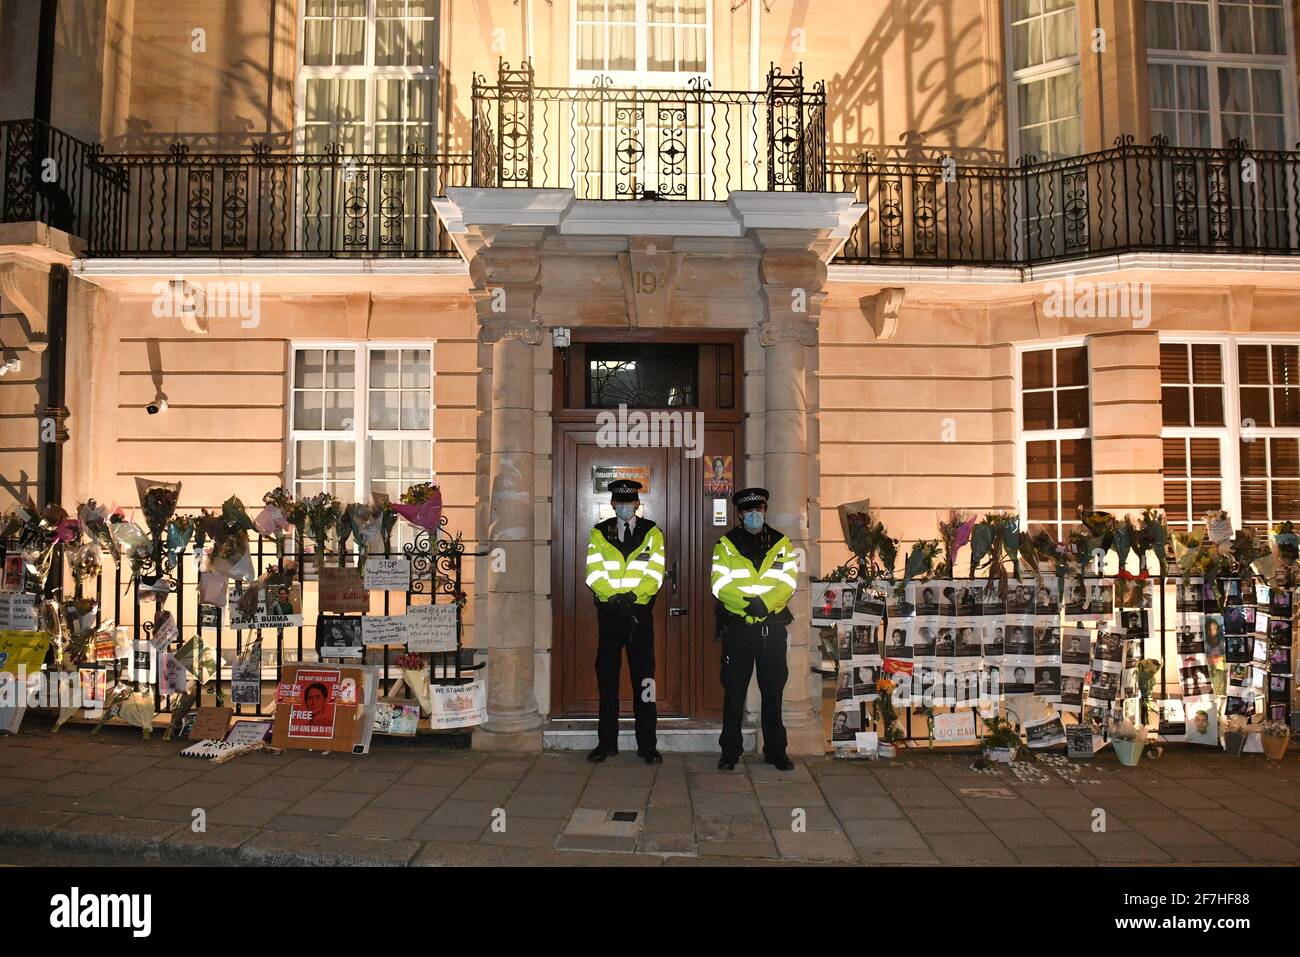 Polizeibeamte vor der Botschaft von Myanmar in Mayfair, London, wo Demonstranten Blumen und Plakate zum Gedenken an die zivilen Opfer des Putsches hinterlassen haben. Bilddatum: Mittwoch, 7. April 2021. Stockfoto